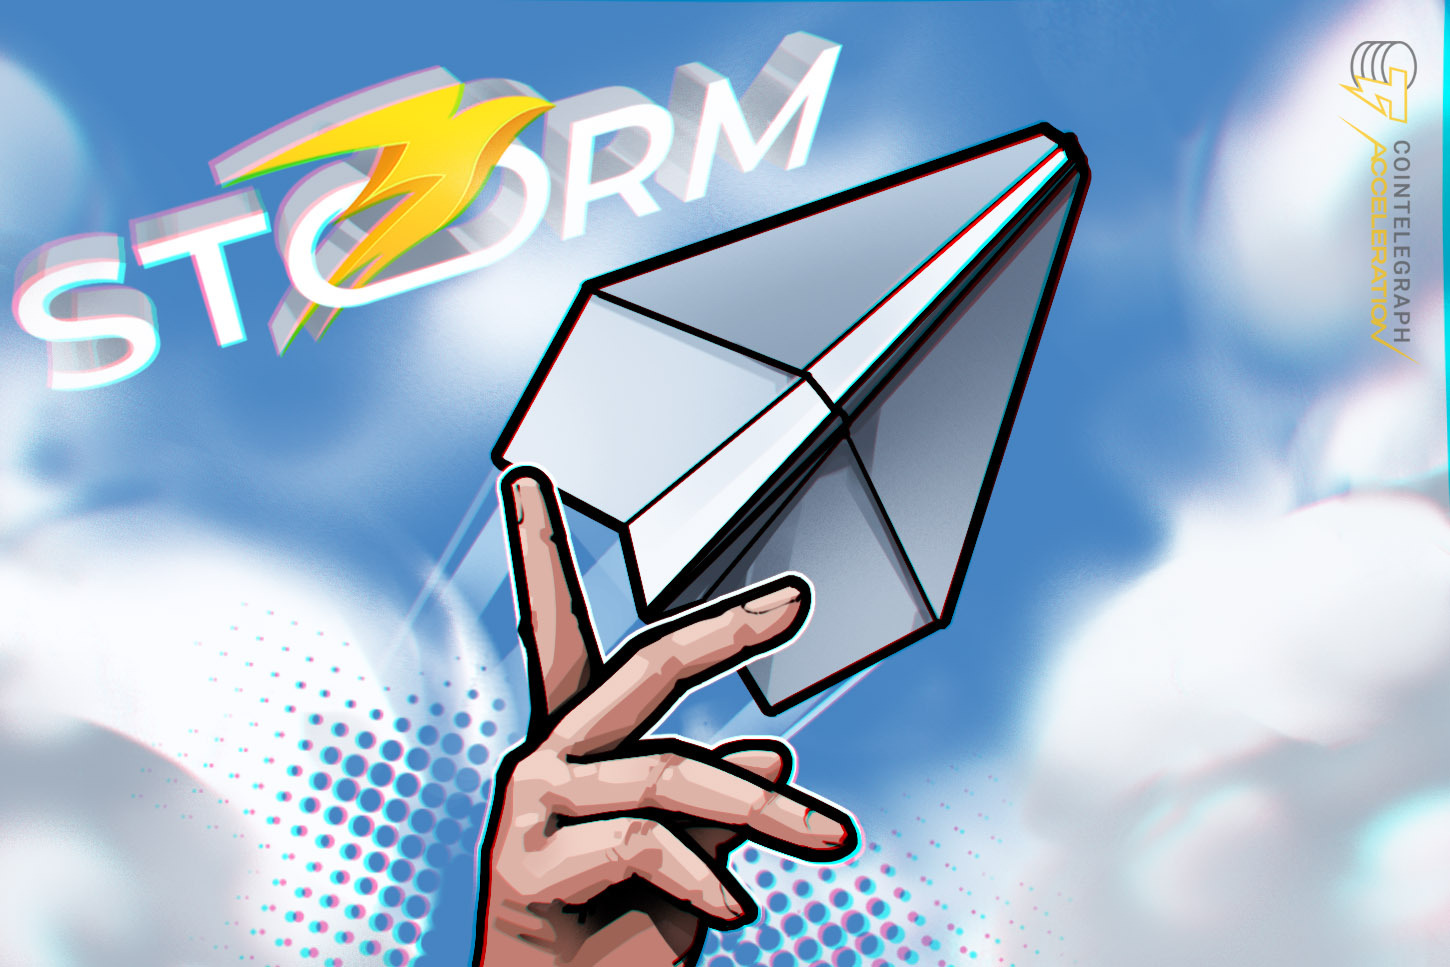 Storm Trade đồng sáng lập: ‘Chúng tôi nhằm mục tiêu mang lại tự do tài chính cho người dùng Telegram’ — Tóm tắt AMA